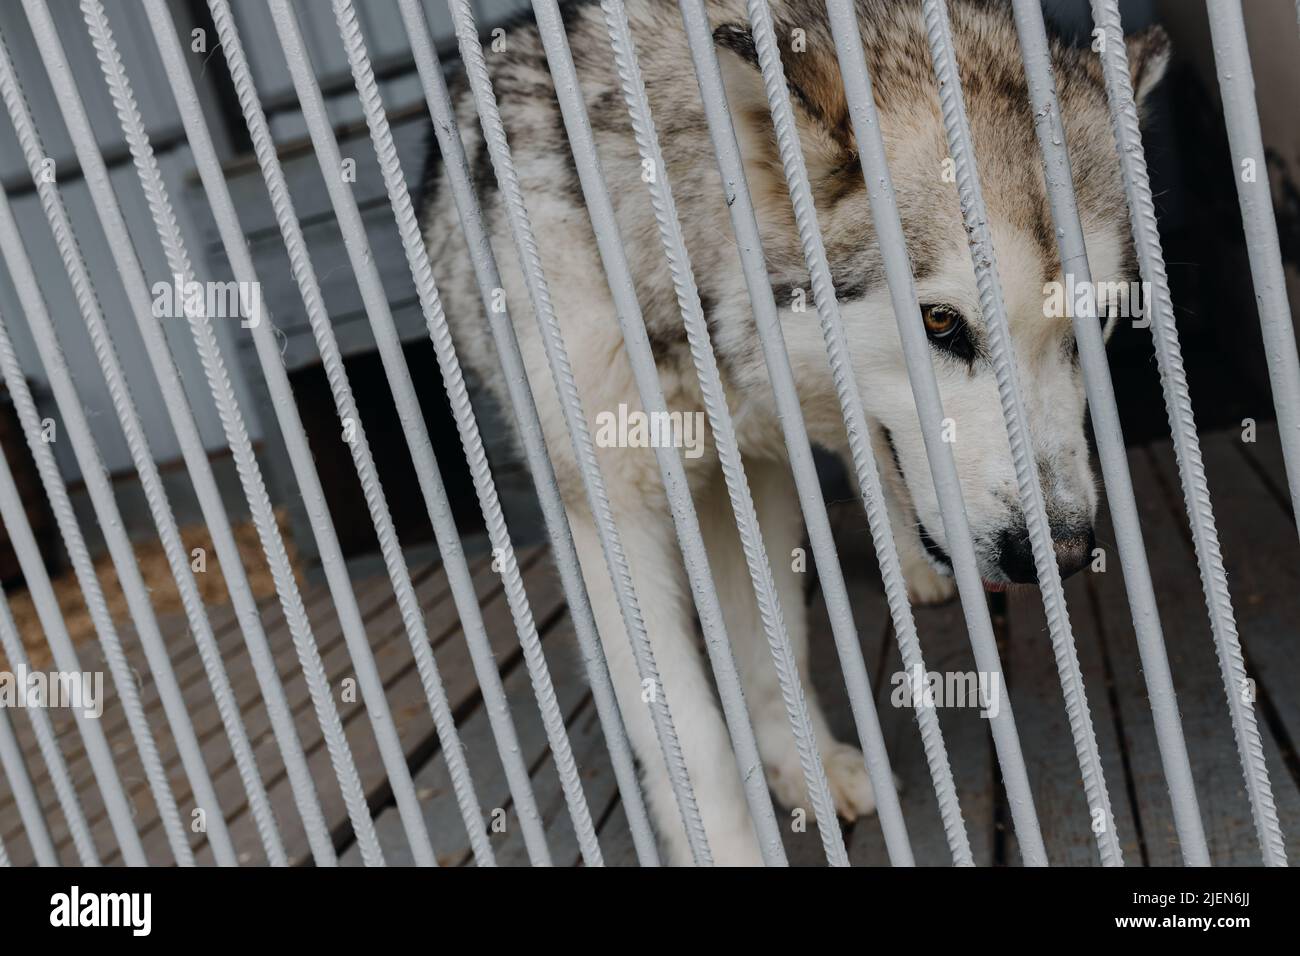 Cane senza tetto in gabbia. Cane infelice dietro le sbarre in un rifugio per cani. Foto Stock